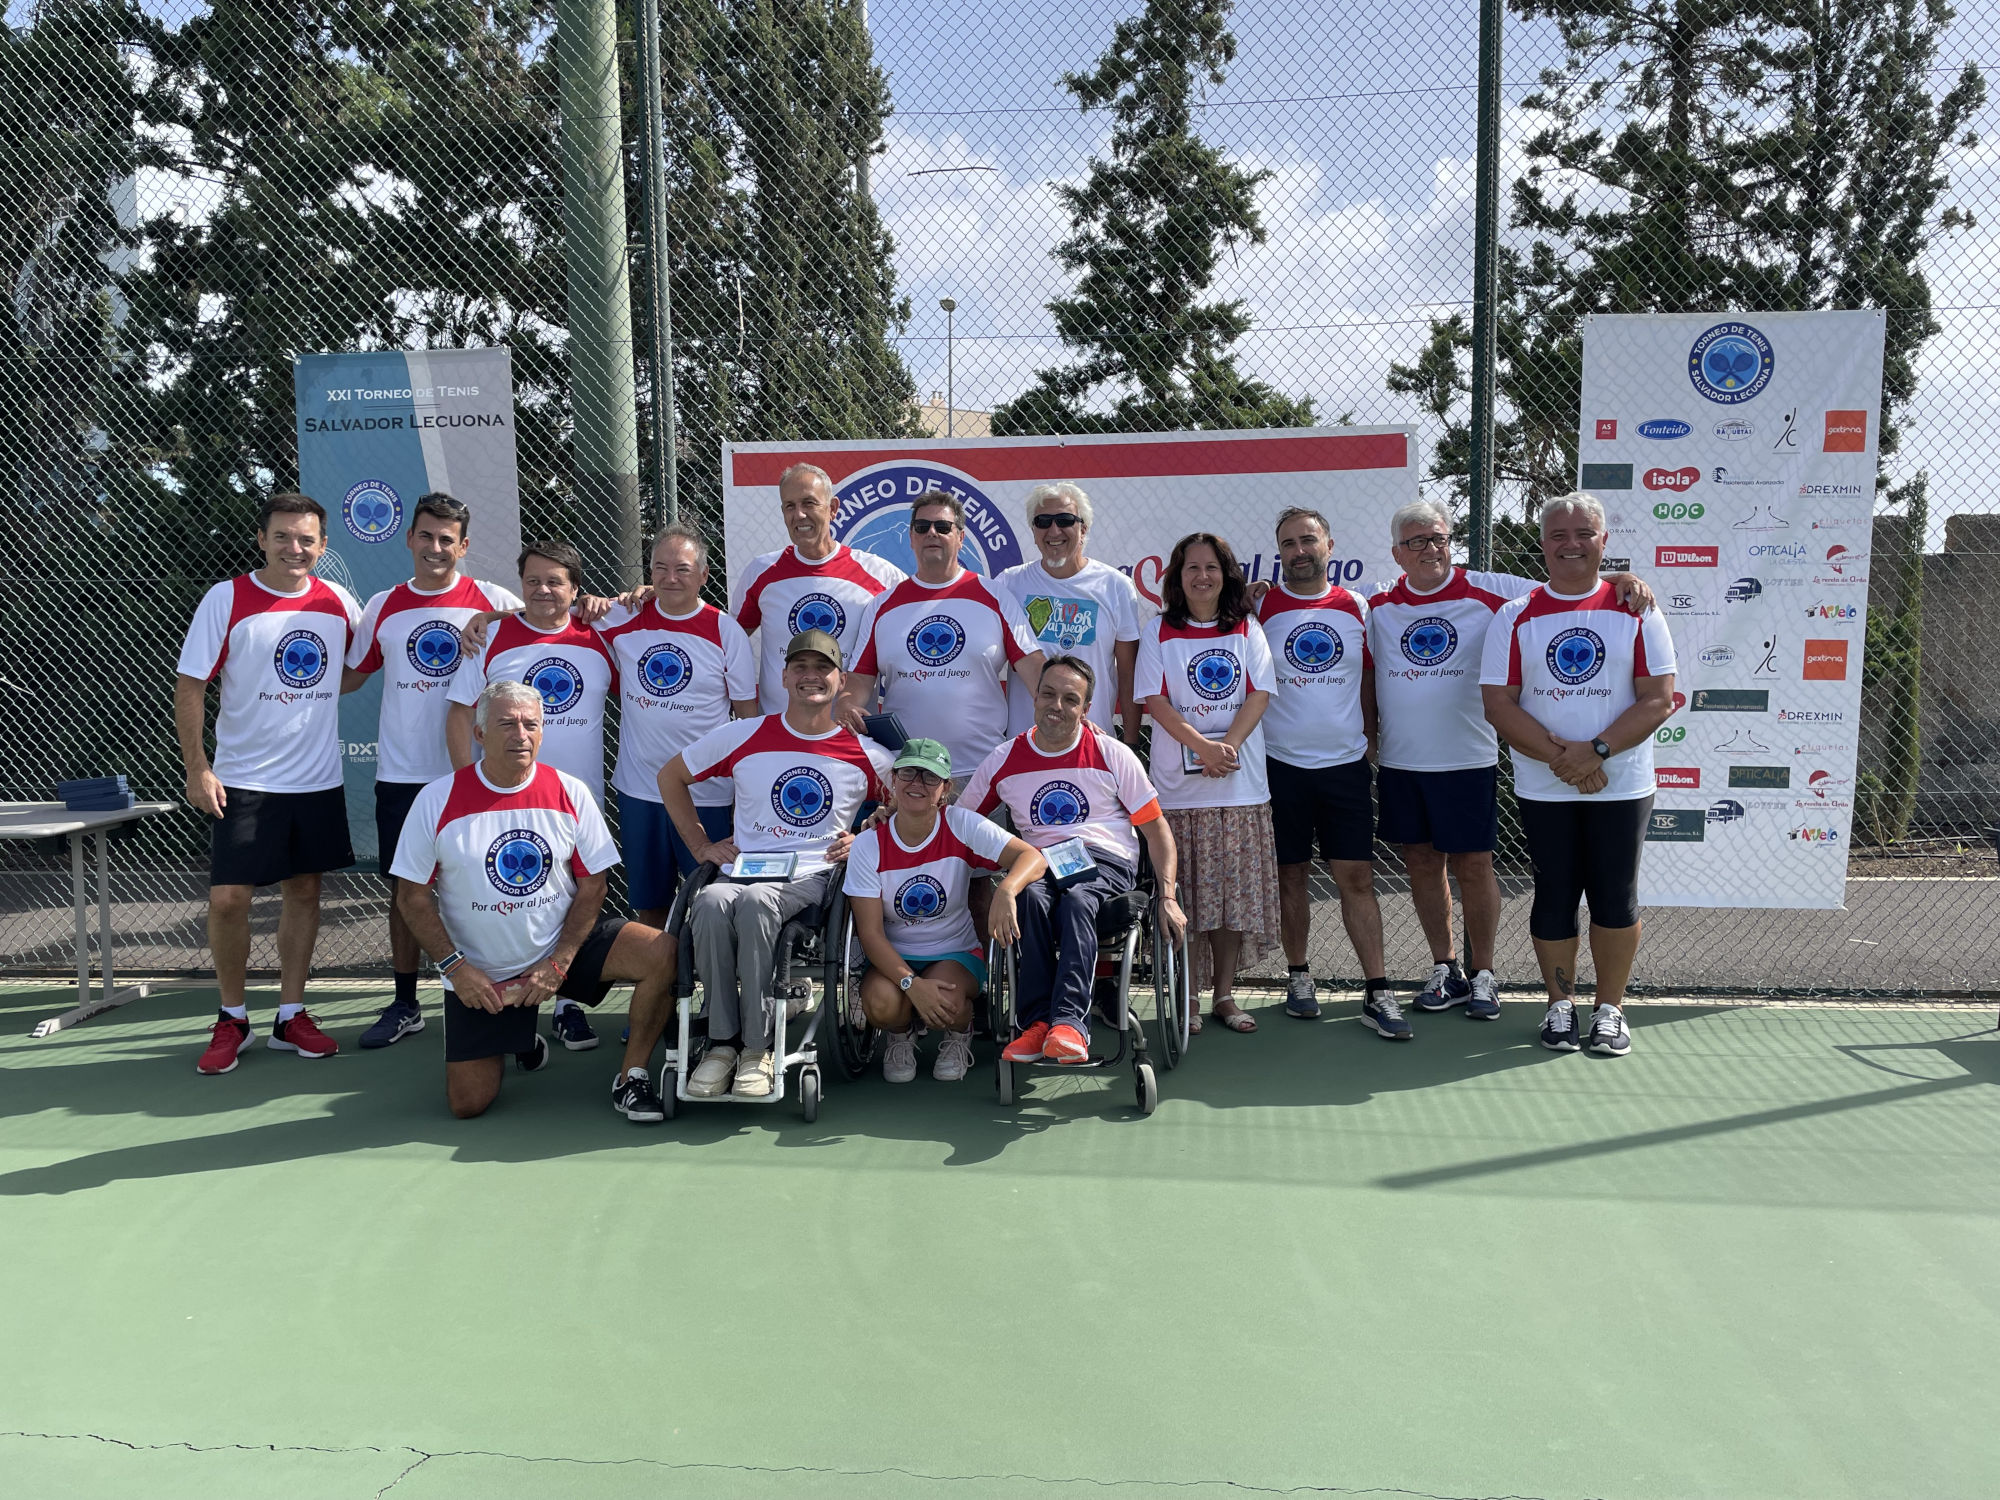 El Torneo Salvador Lecuona reúne a más de un centenar de amantes del tenis por una causa solidaria